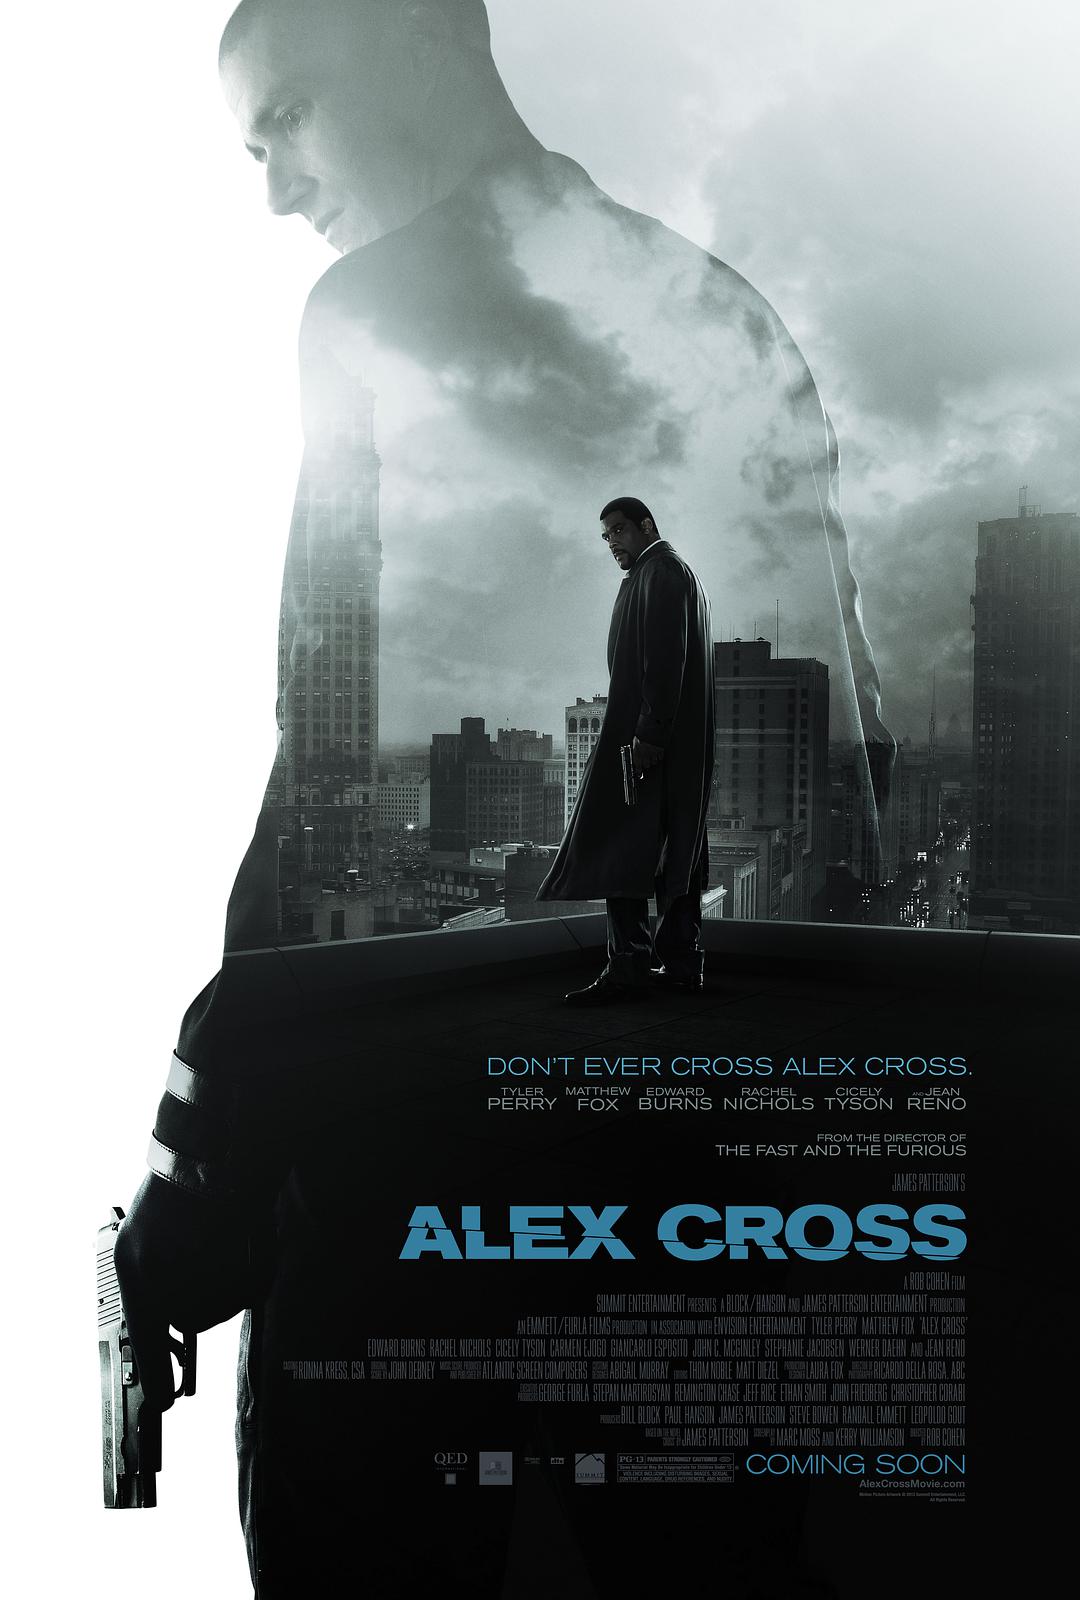 亚历克斯·克洛斯.神探追缉令. FBI重装戒备 [港版原盘简繁中字] Alex Cross 2012 HK Blu-Ray 1080p AVC TrueHD 7.1-BDarea [20.92 GB]-1.jpg